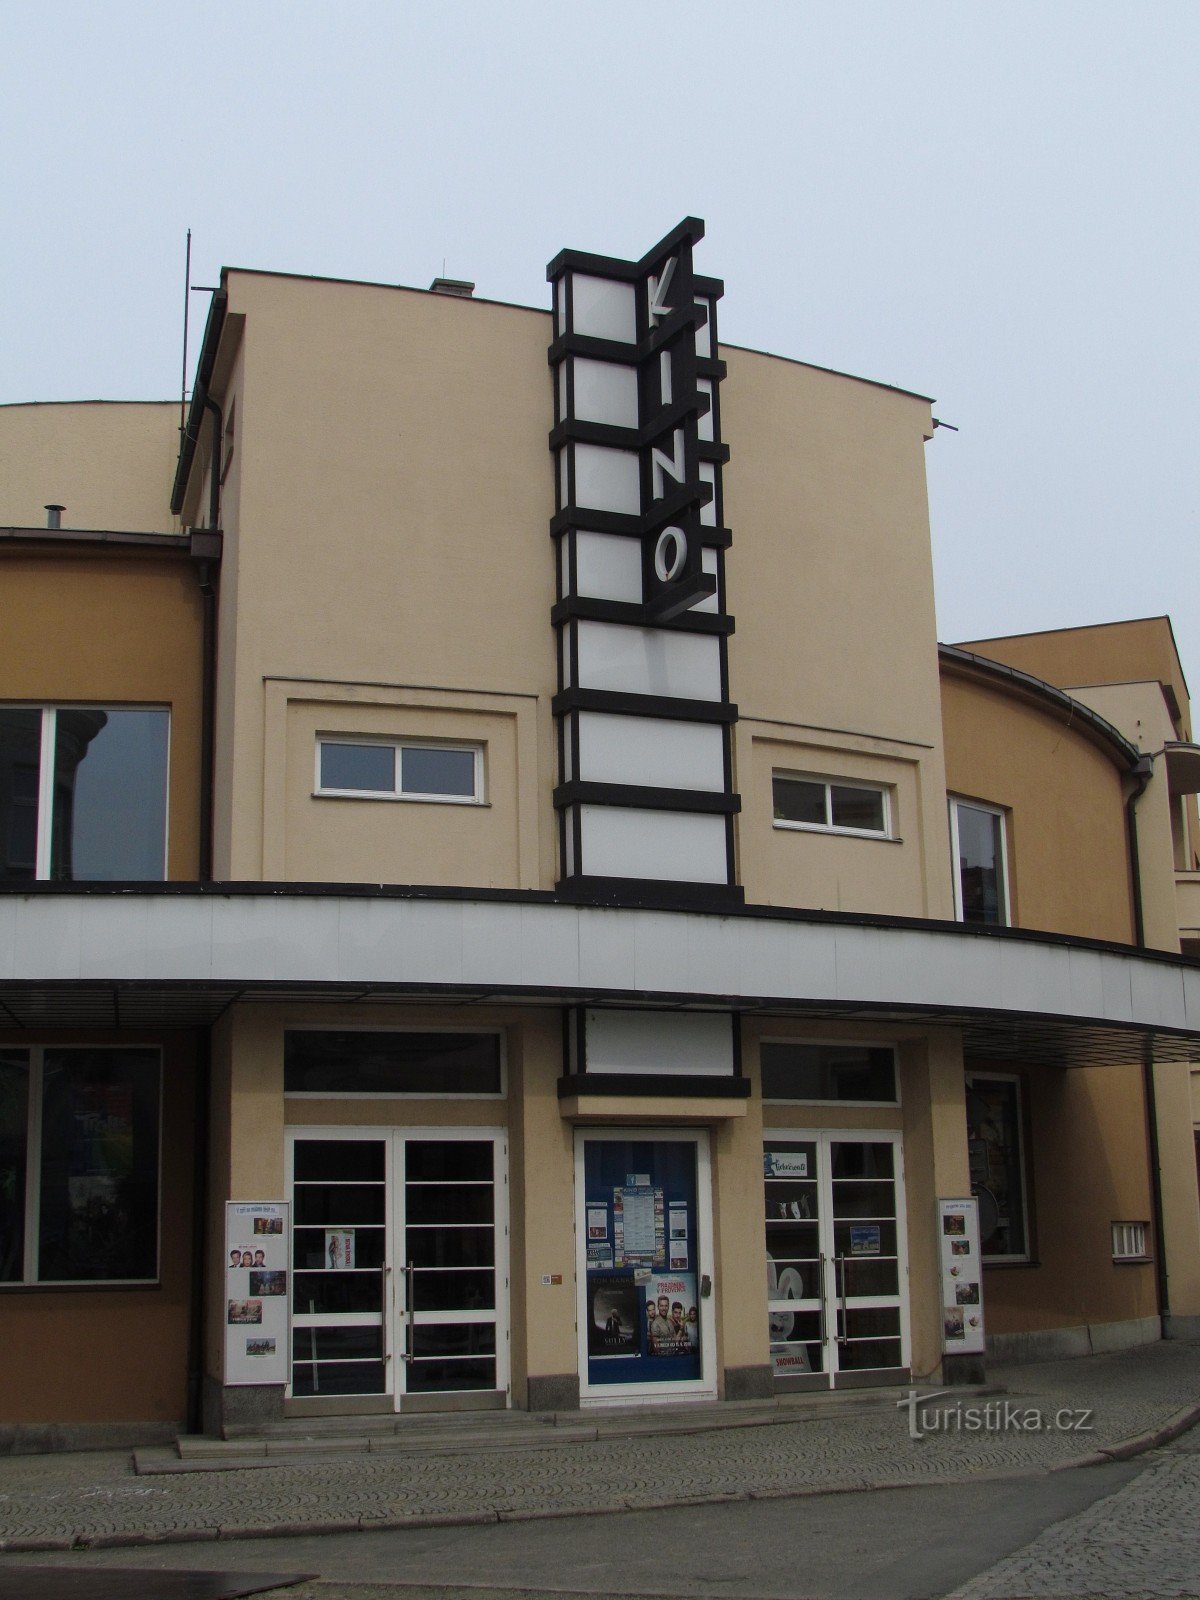 Nový Jičín - cinema cittadino